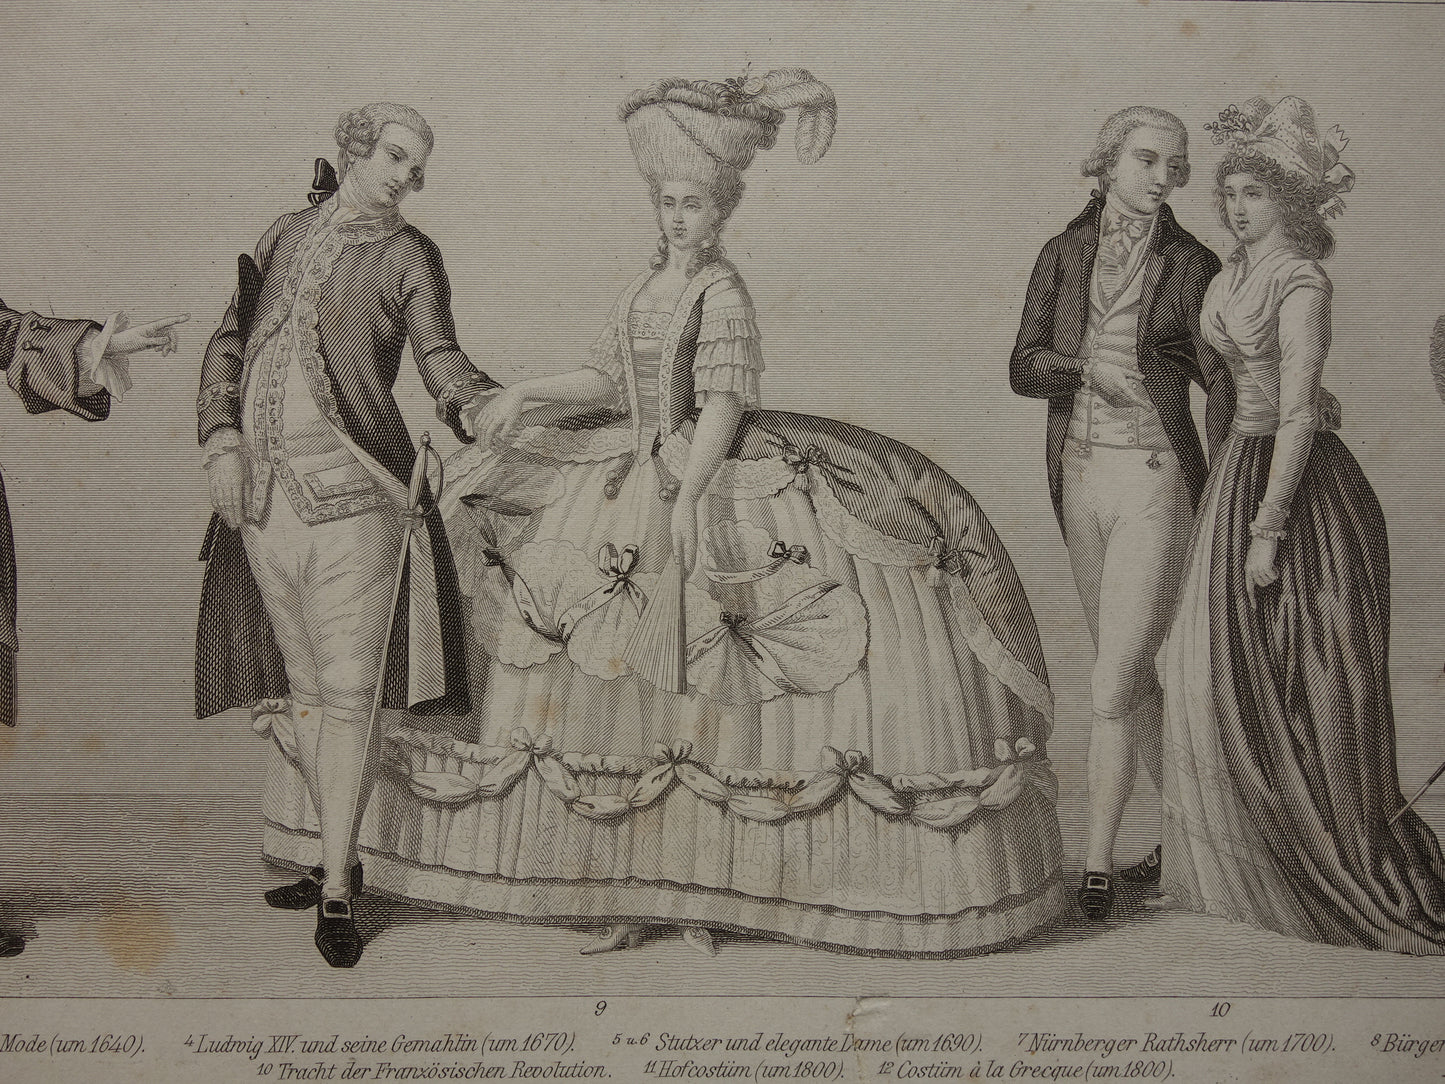 Kleding uit 17e en 18e eeuw oude prent uit 1870 originele antieke illustratie mode prints